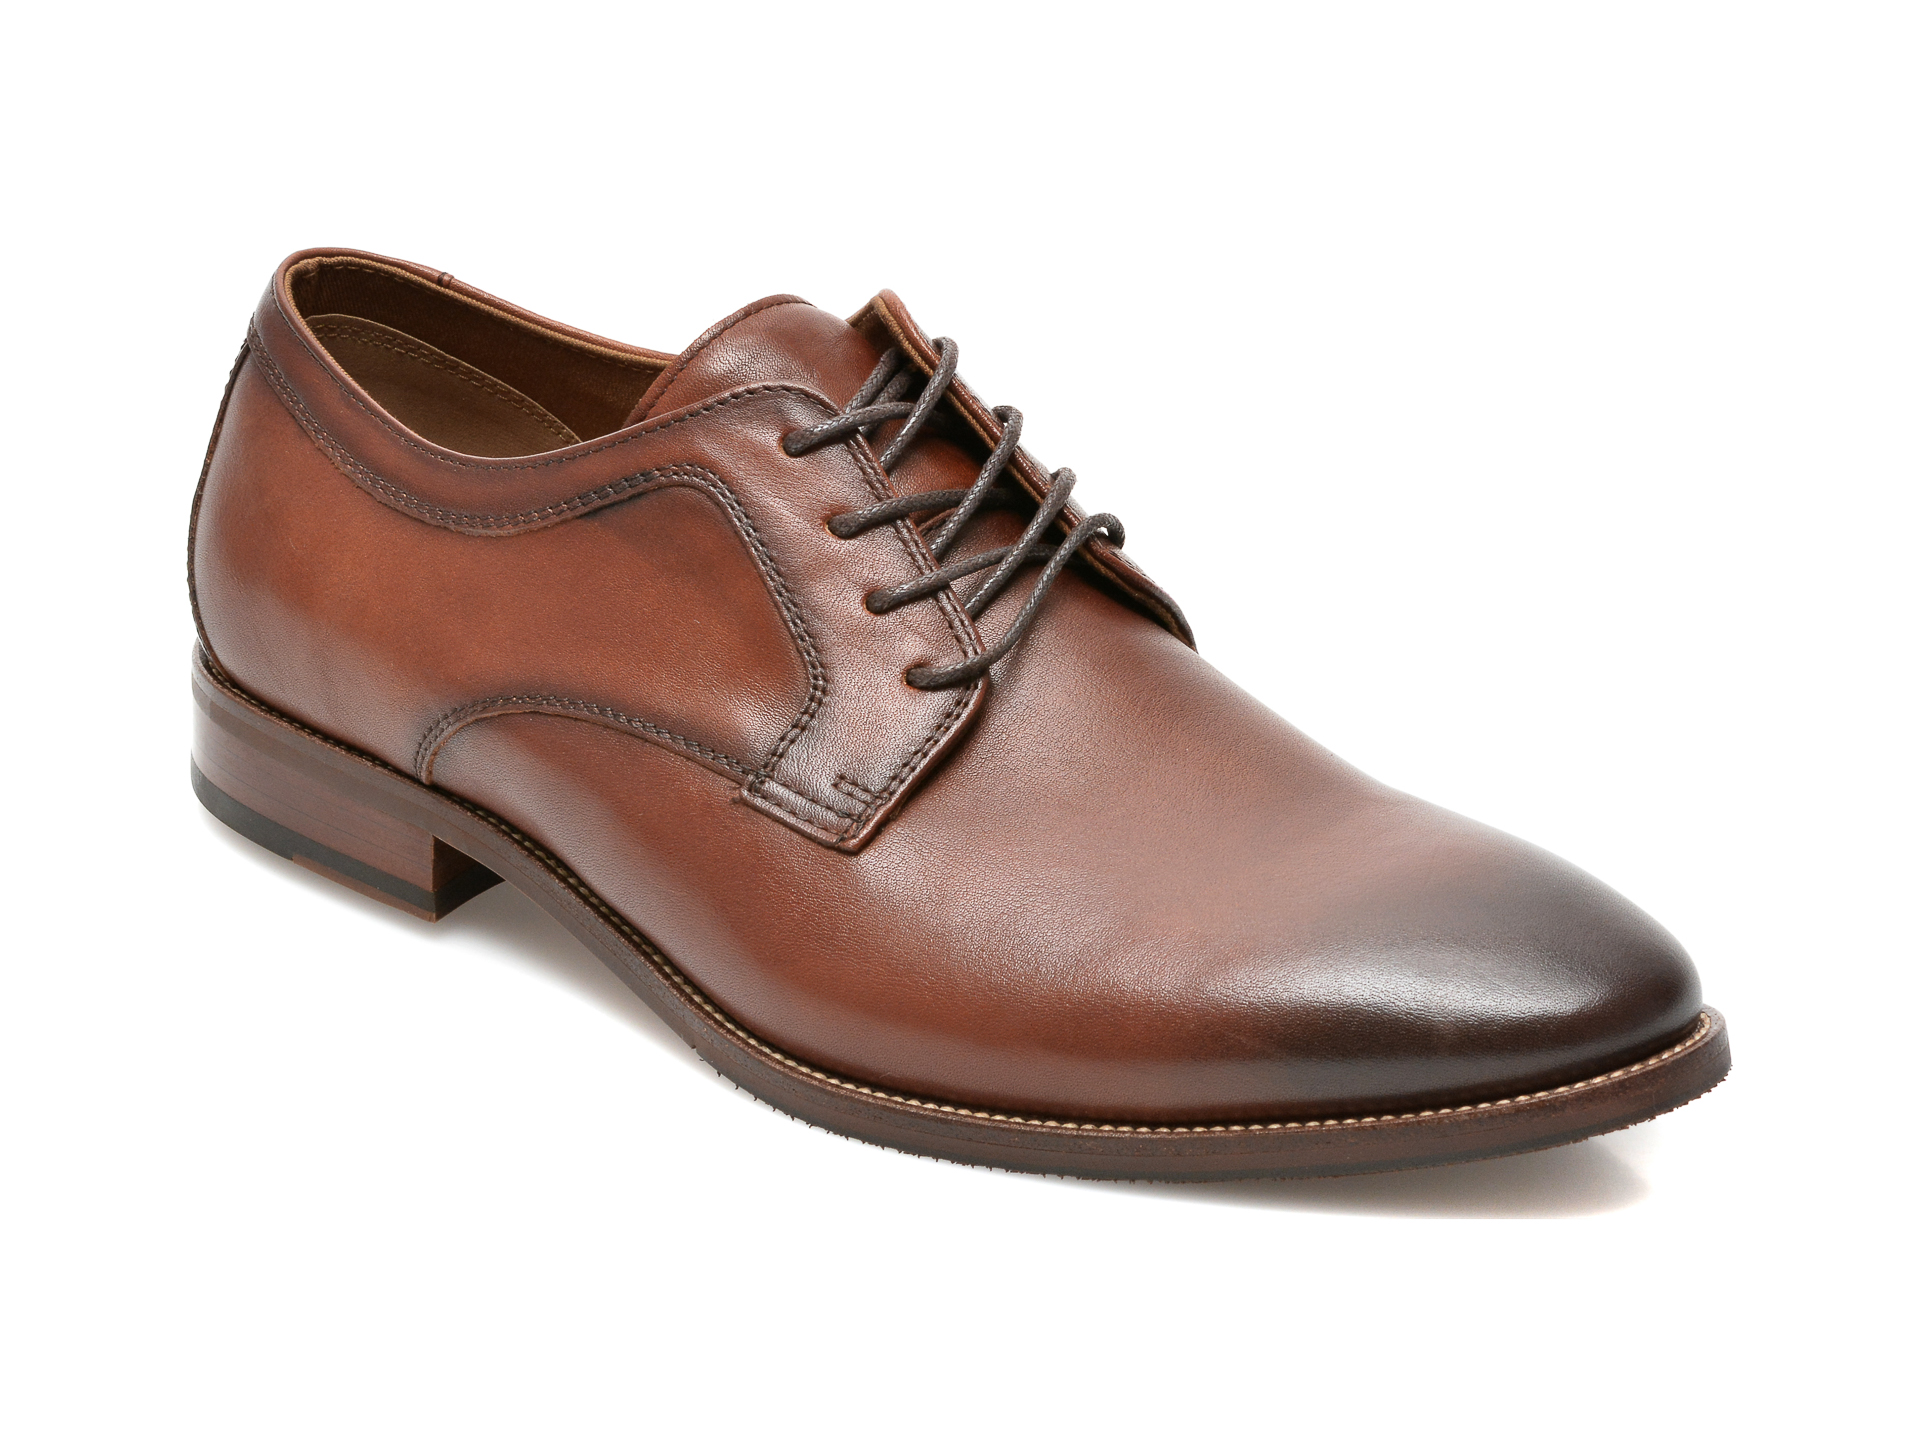 Pantofi ALDO maro, Jarrahflex-W220, din piele naturala Aldo Aldo